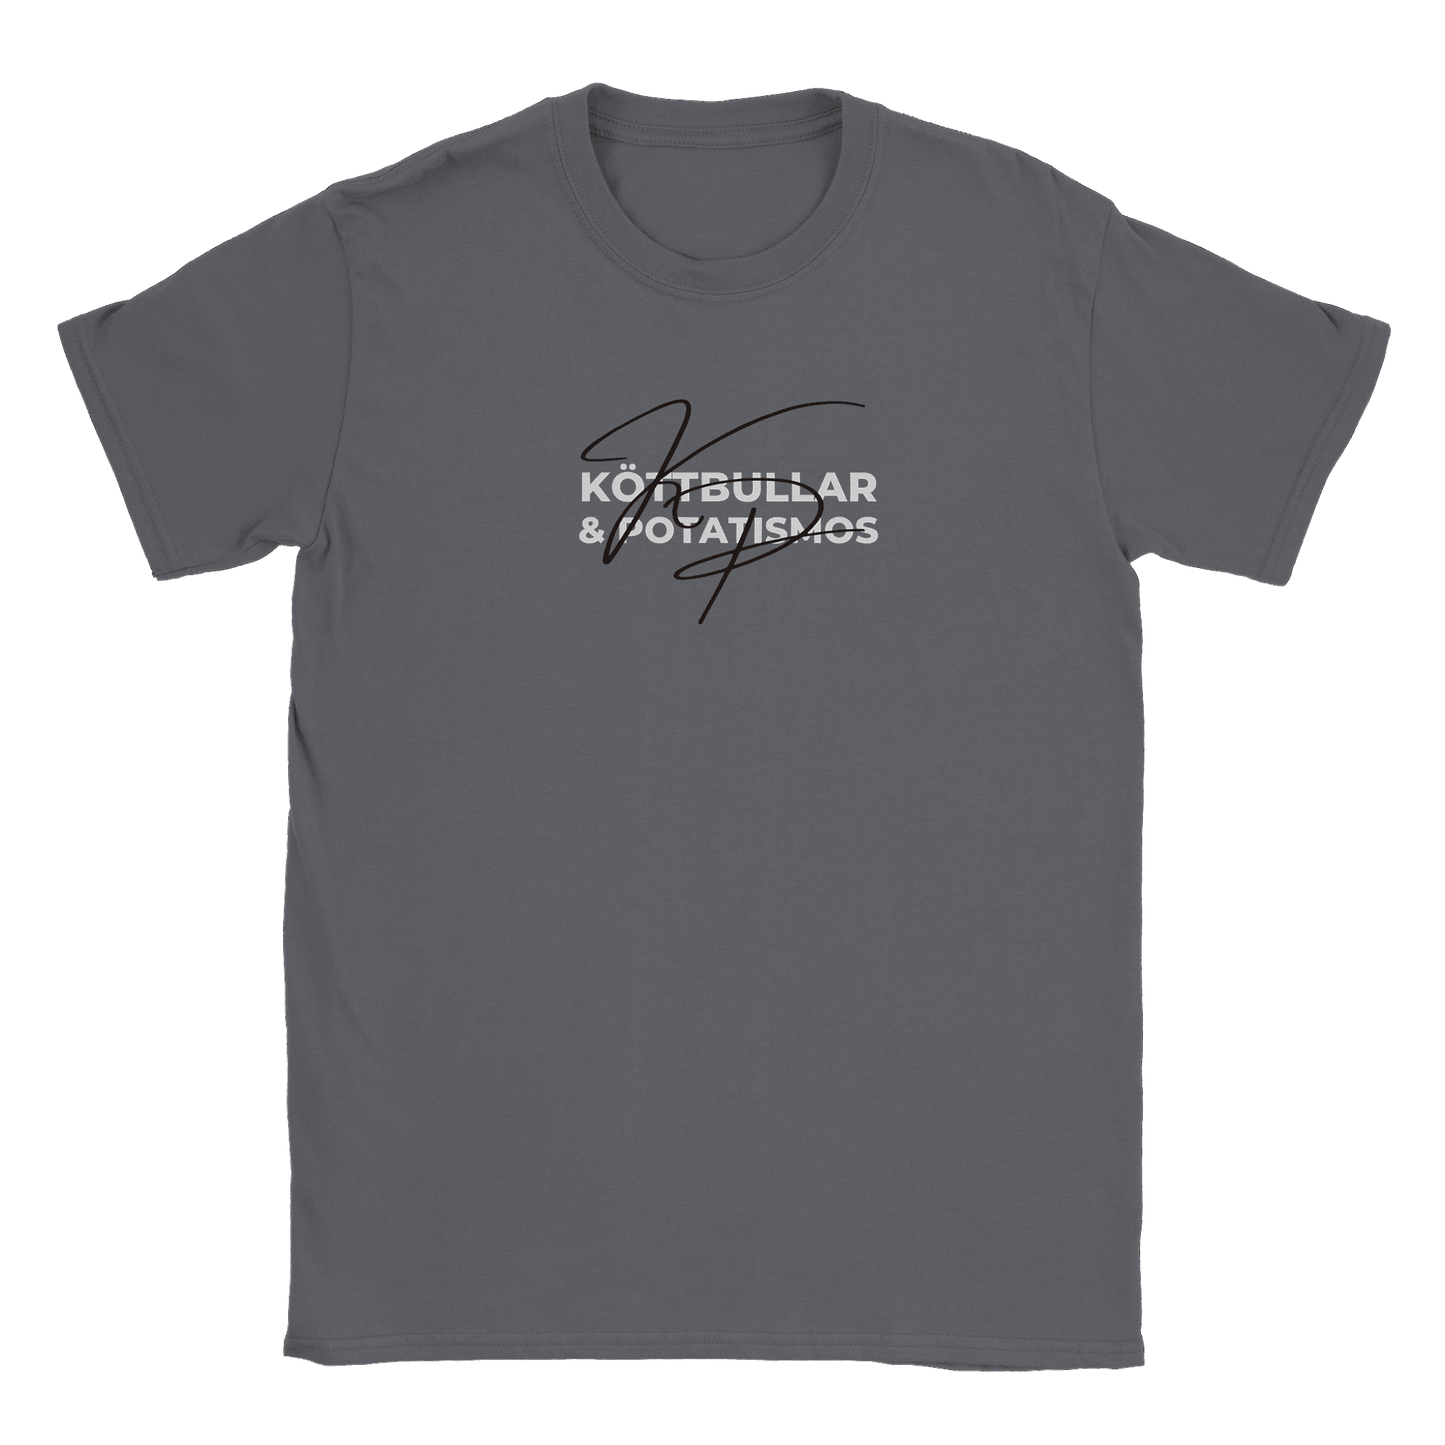 Köttbullar och potatismos - T-shirt Charcoal